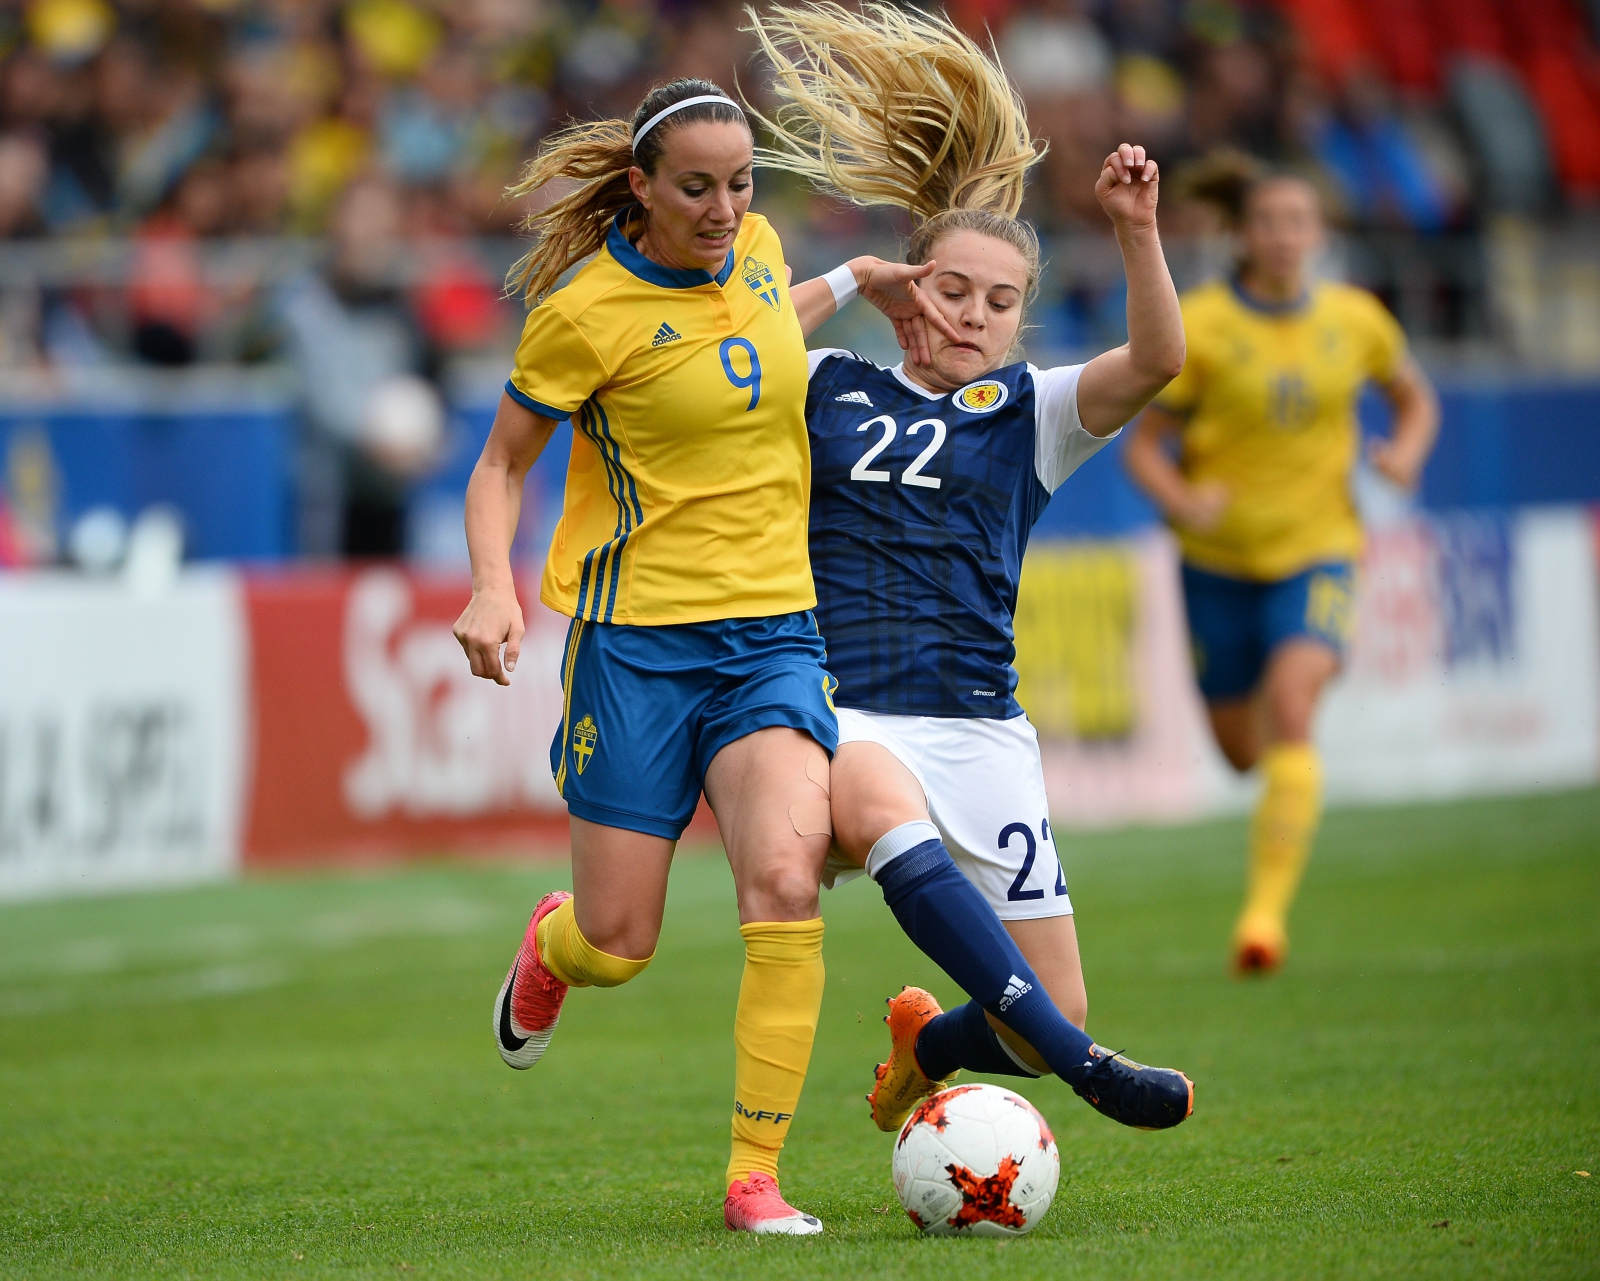 Mecz Szwecja - Szkocja - kobiecej piłki nożnej, w Vaxjo. 